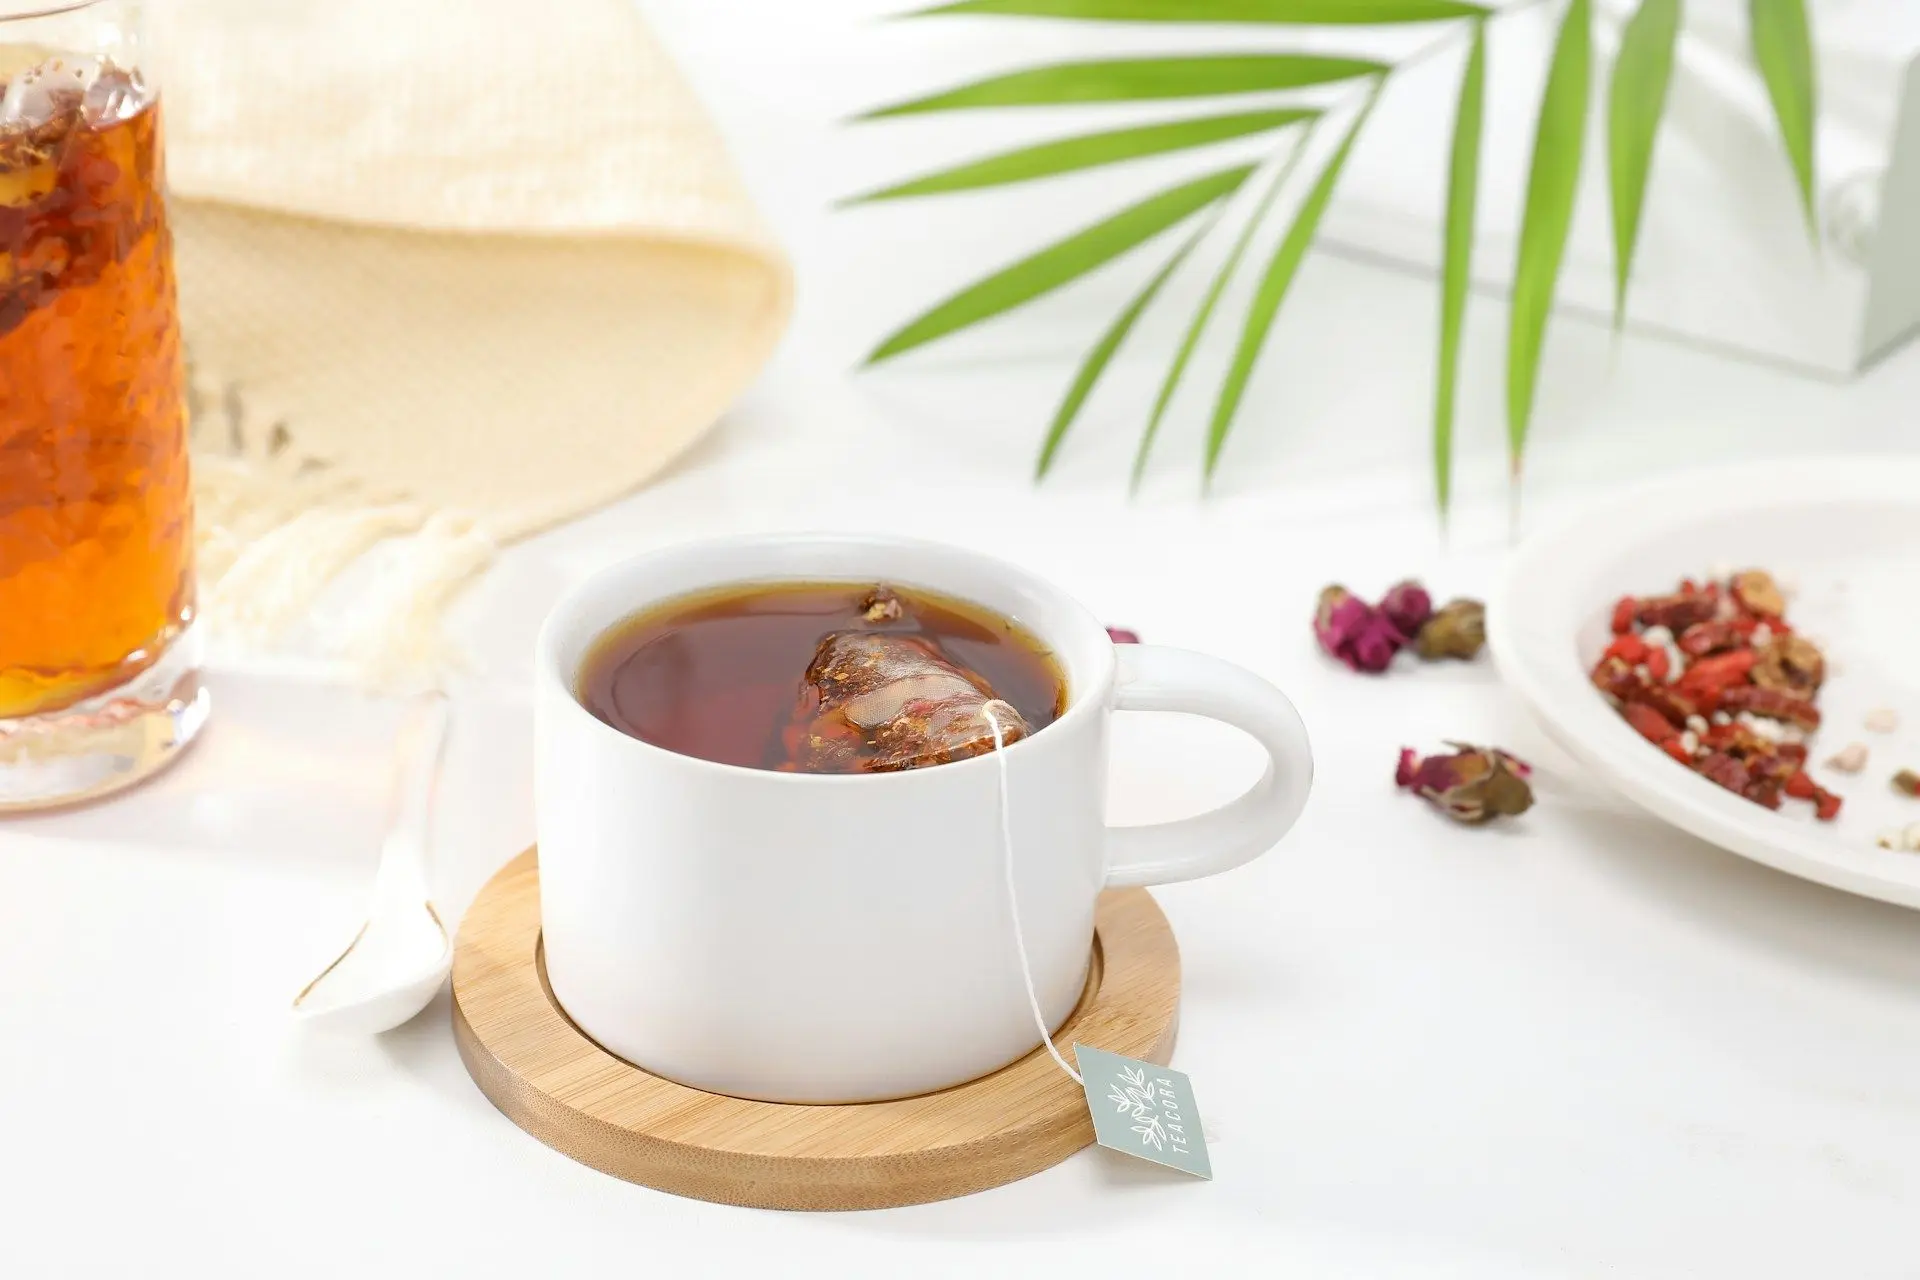 Є три важливі причини, чому вам потрібно пити чай.

Перша причина - це користь для здоров'я. Чай містить антиоксиданти, які сприяють зменшенню запалення в організмі та підтримці імунної системи. Він також має заспокійливий ефект, допомагаючи відпочити та 